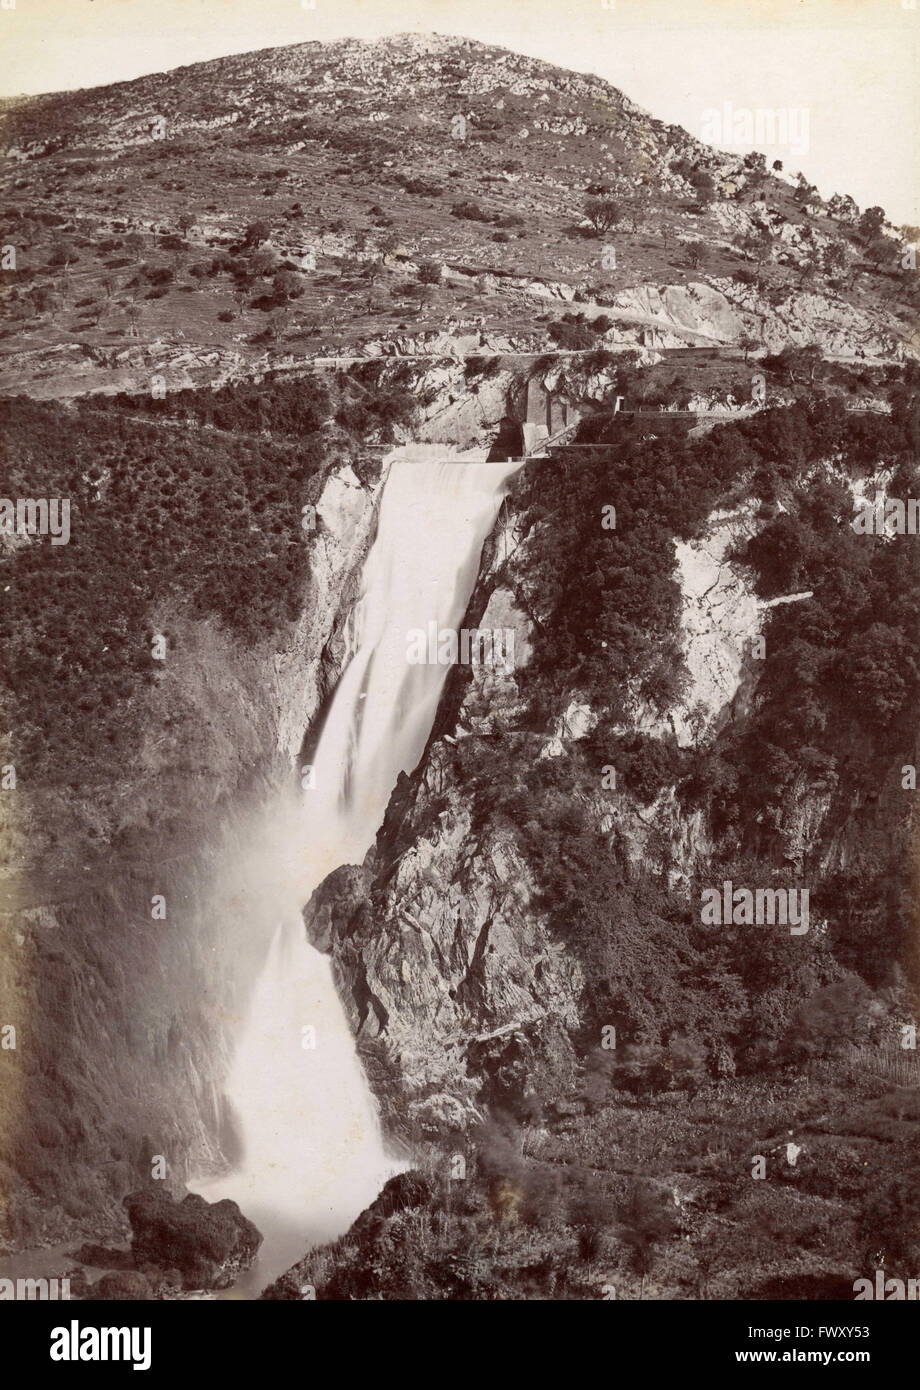 La cascade de Tivoli, Italie Banque D'Images